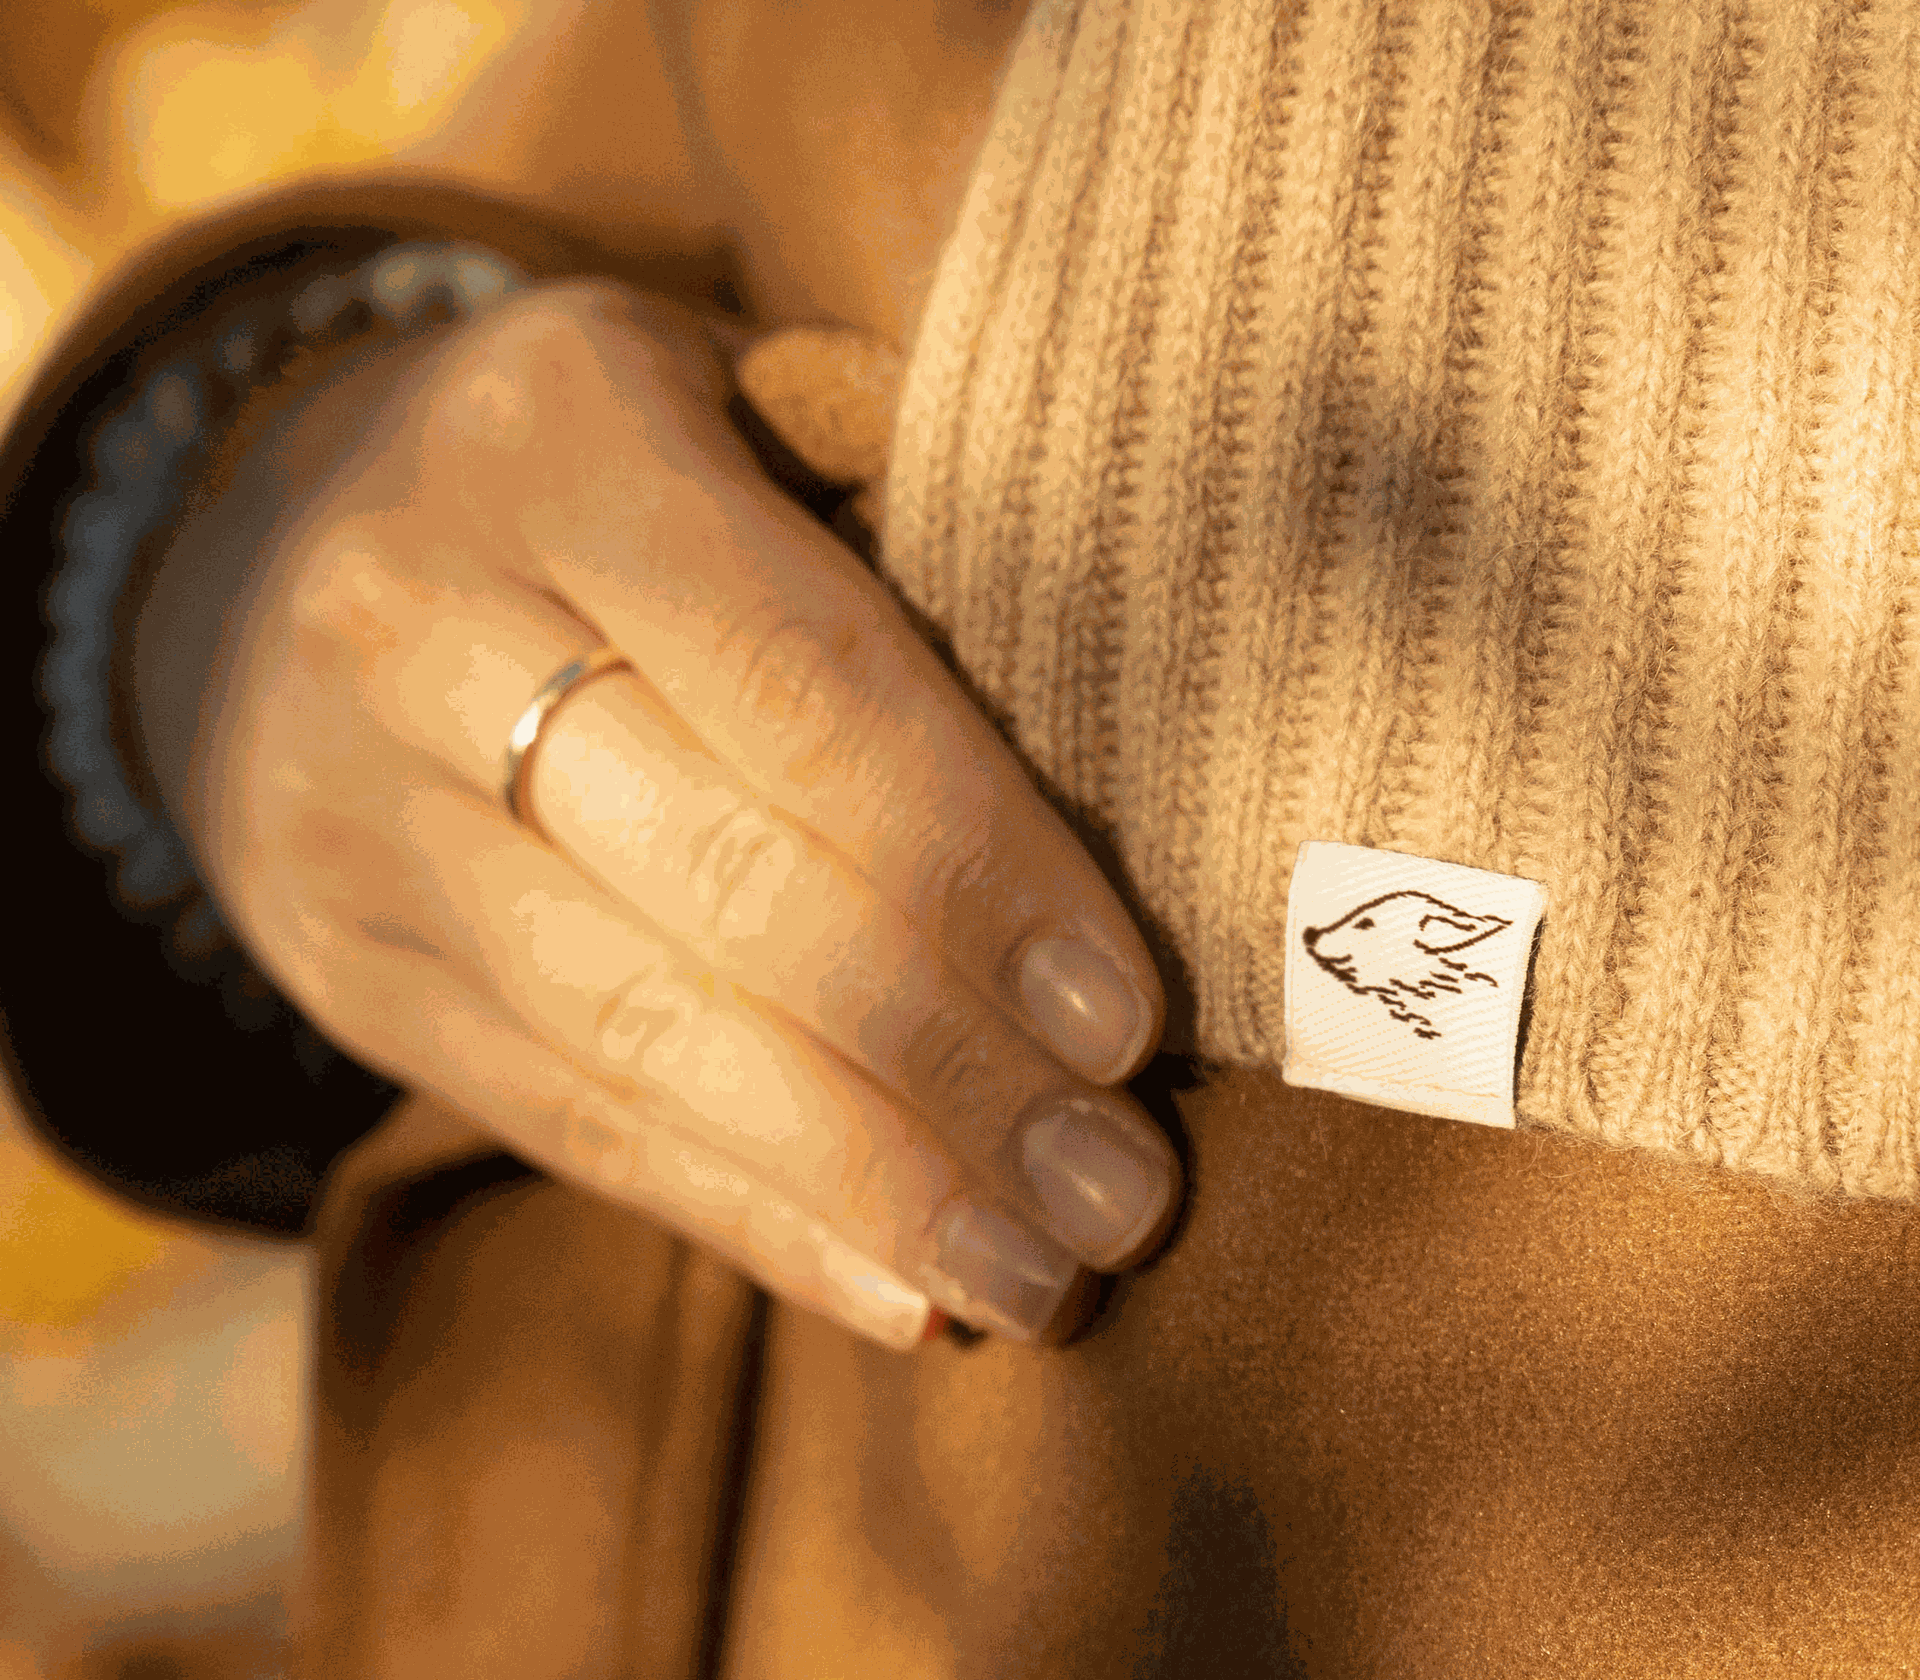 Detailbild des beigen Schals aus Kamelbild, der mit einer braunen Jacke kombiniert wurde.